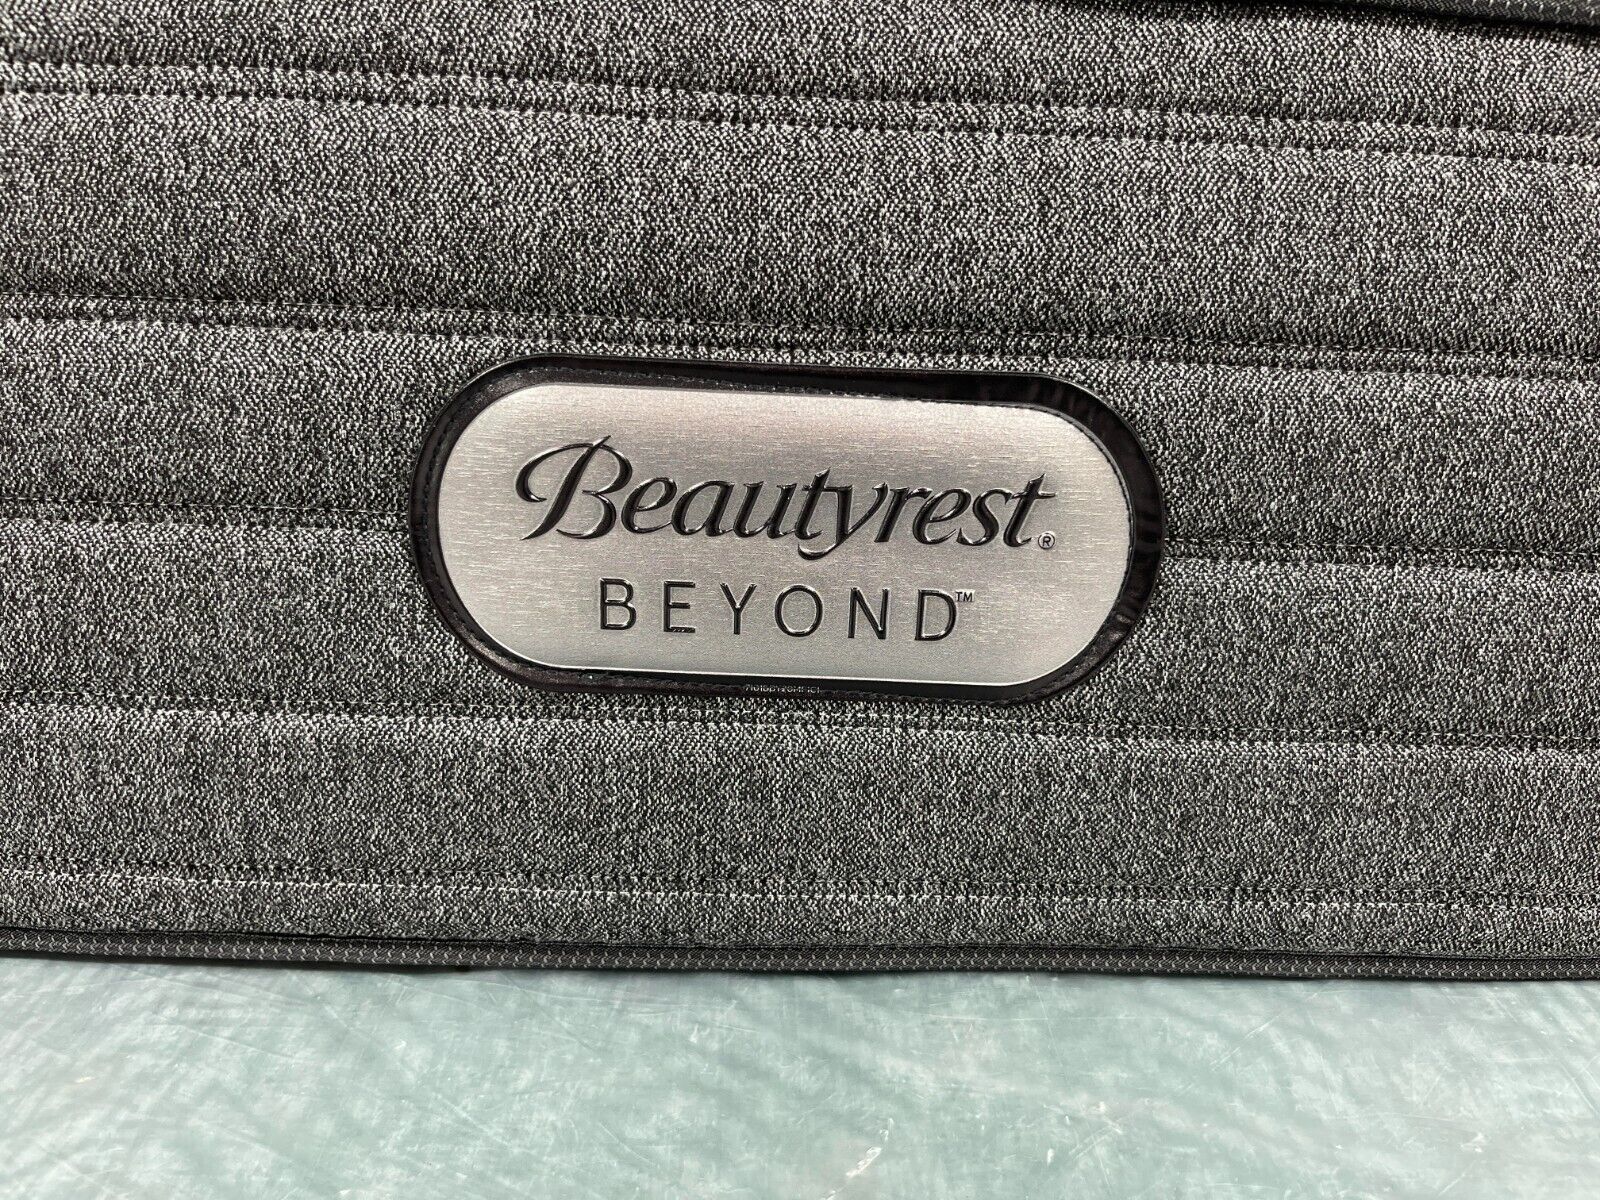 beautyrest beyond extra firm mattress stores